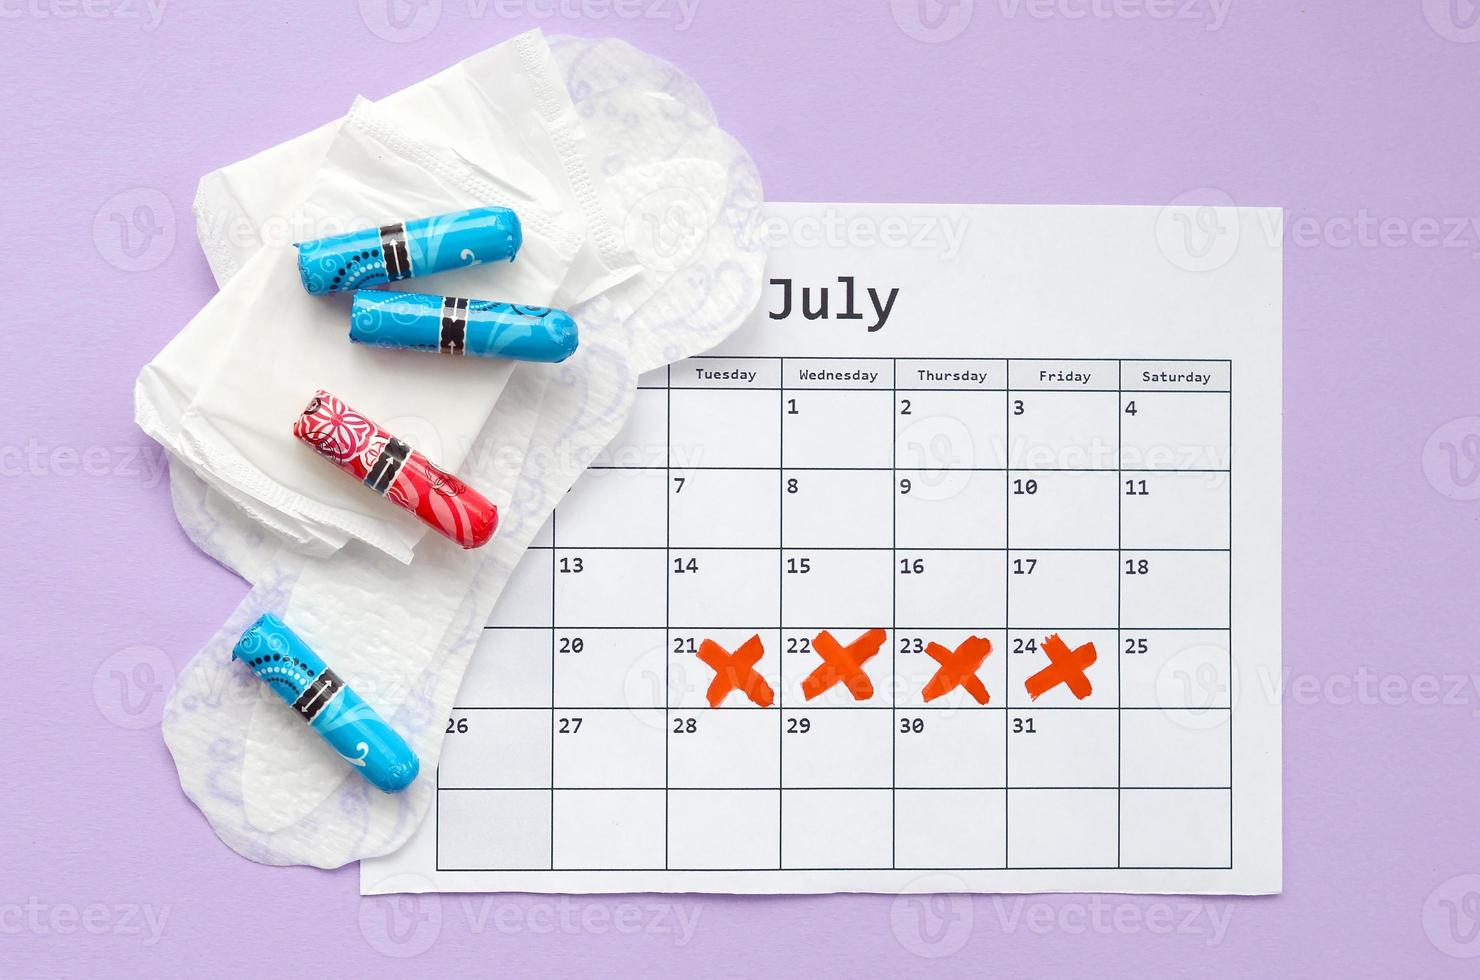 menstruations- dynor och tamponger på menstruation period kalender platt lägga på lila bakgrund foto